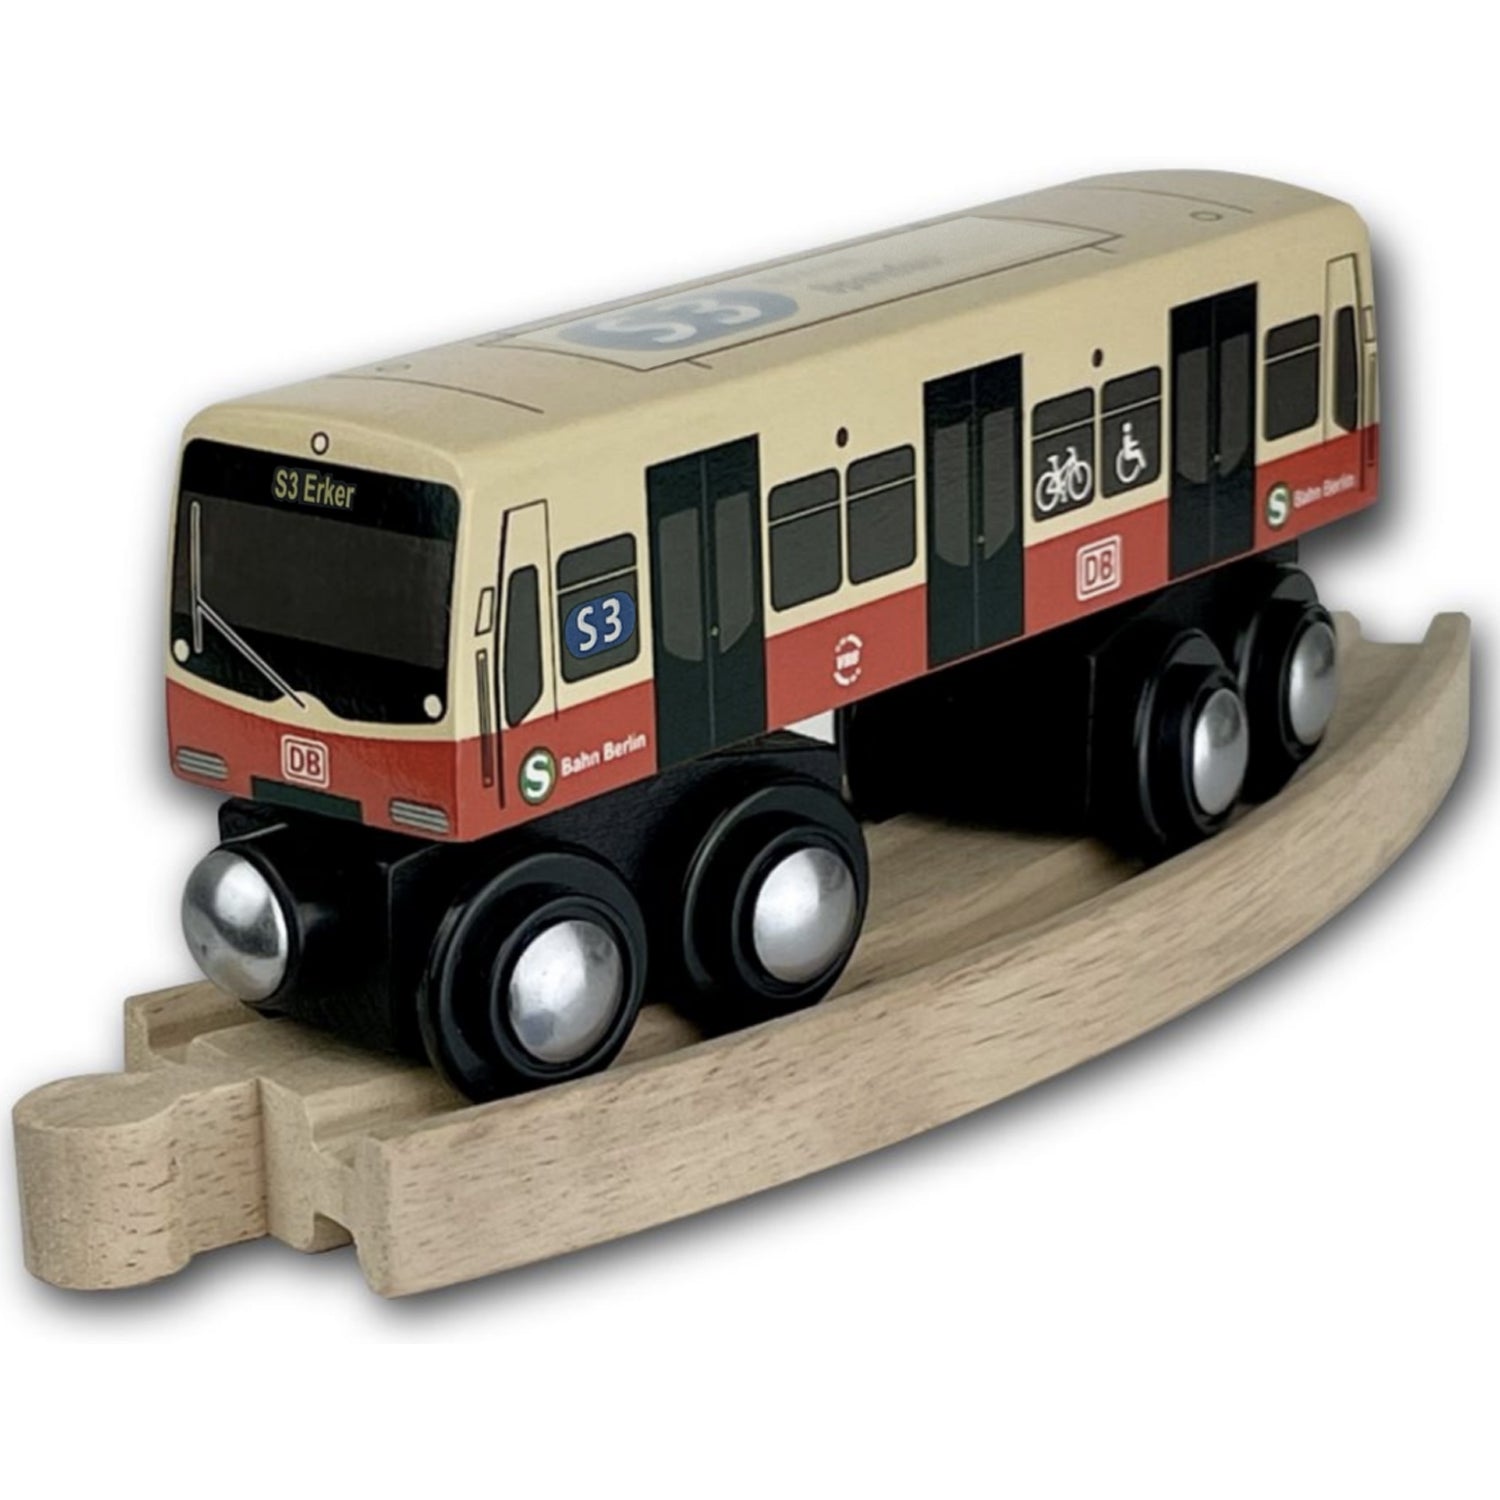 Miniatur Holz S-Bahn Berlin S3 zum Spielen